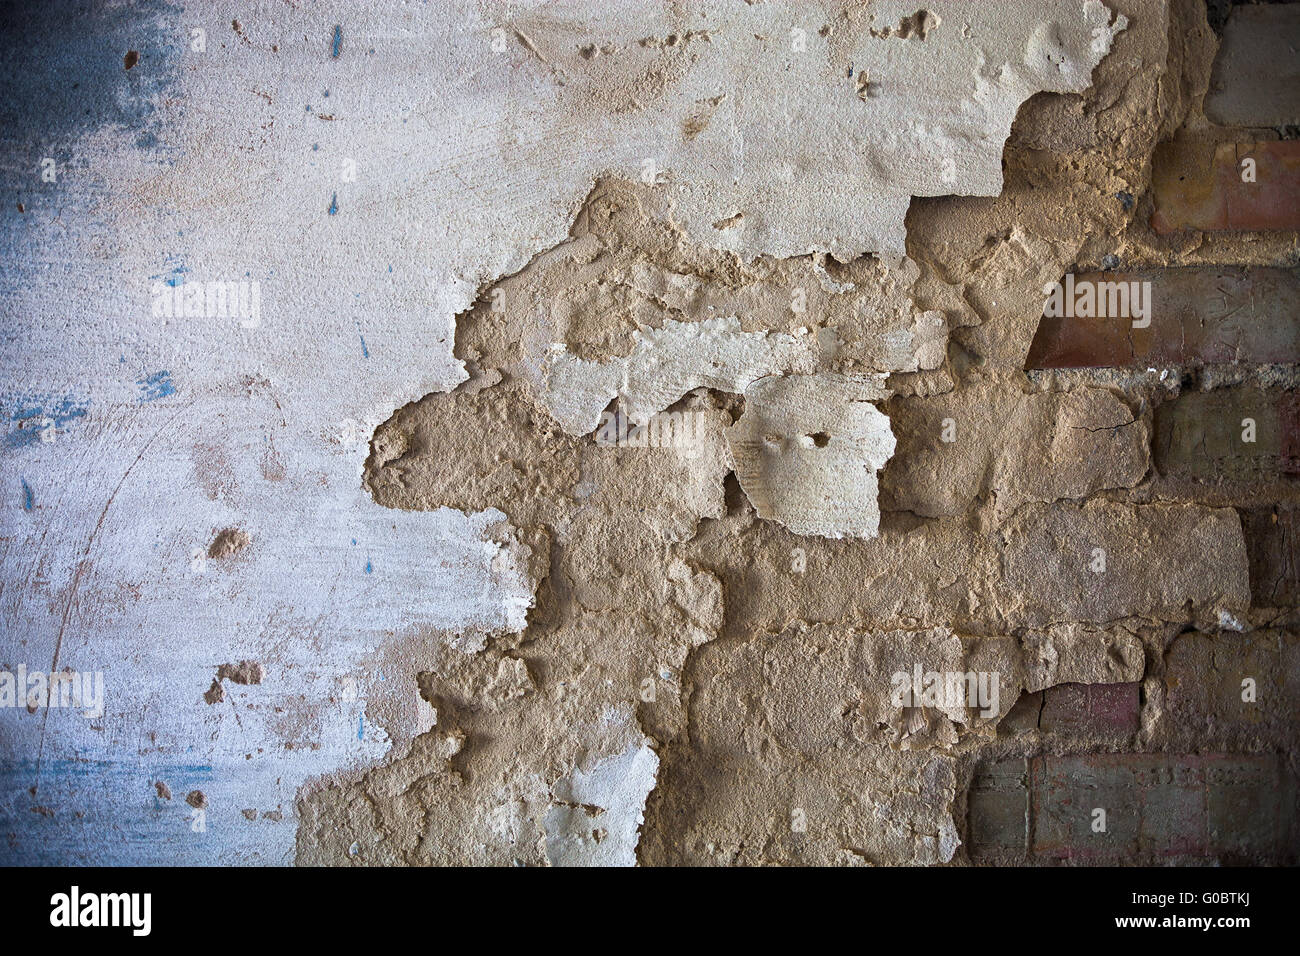 Damaged whitewashed plaster on the brick wall Stock Photo